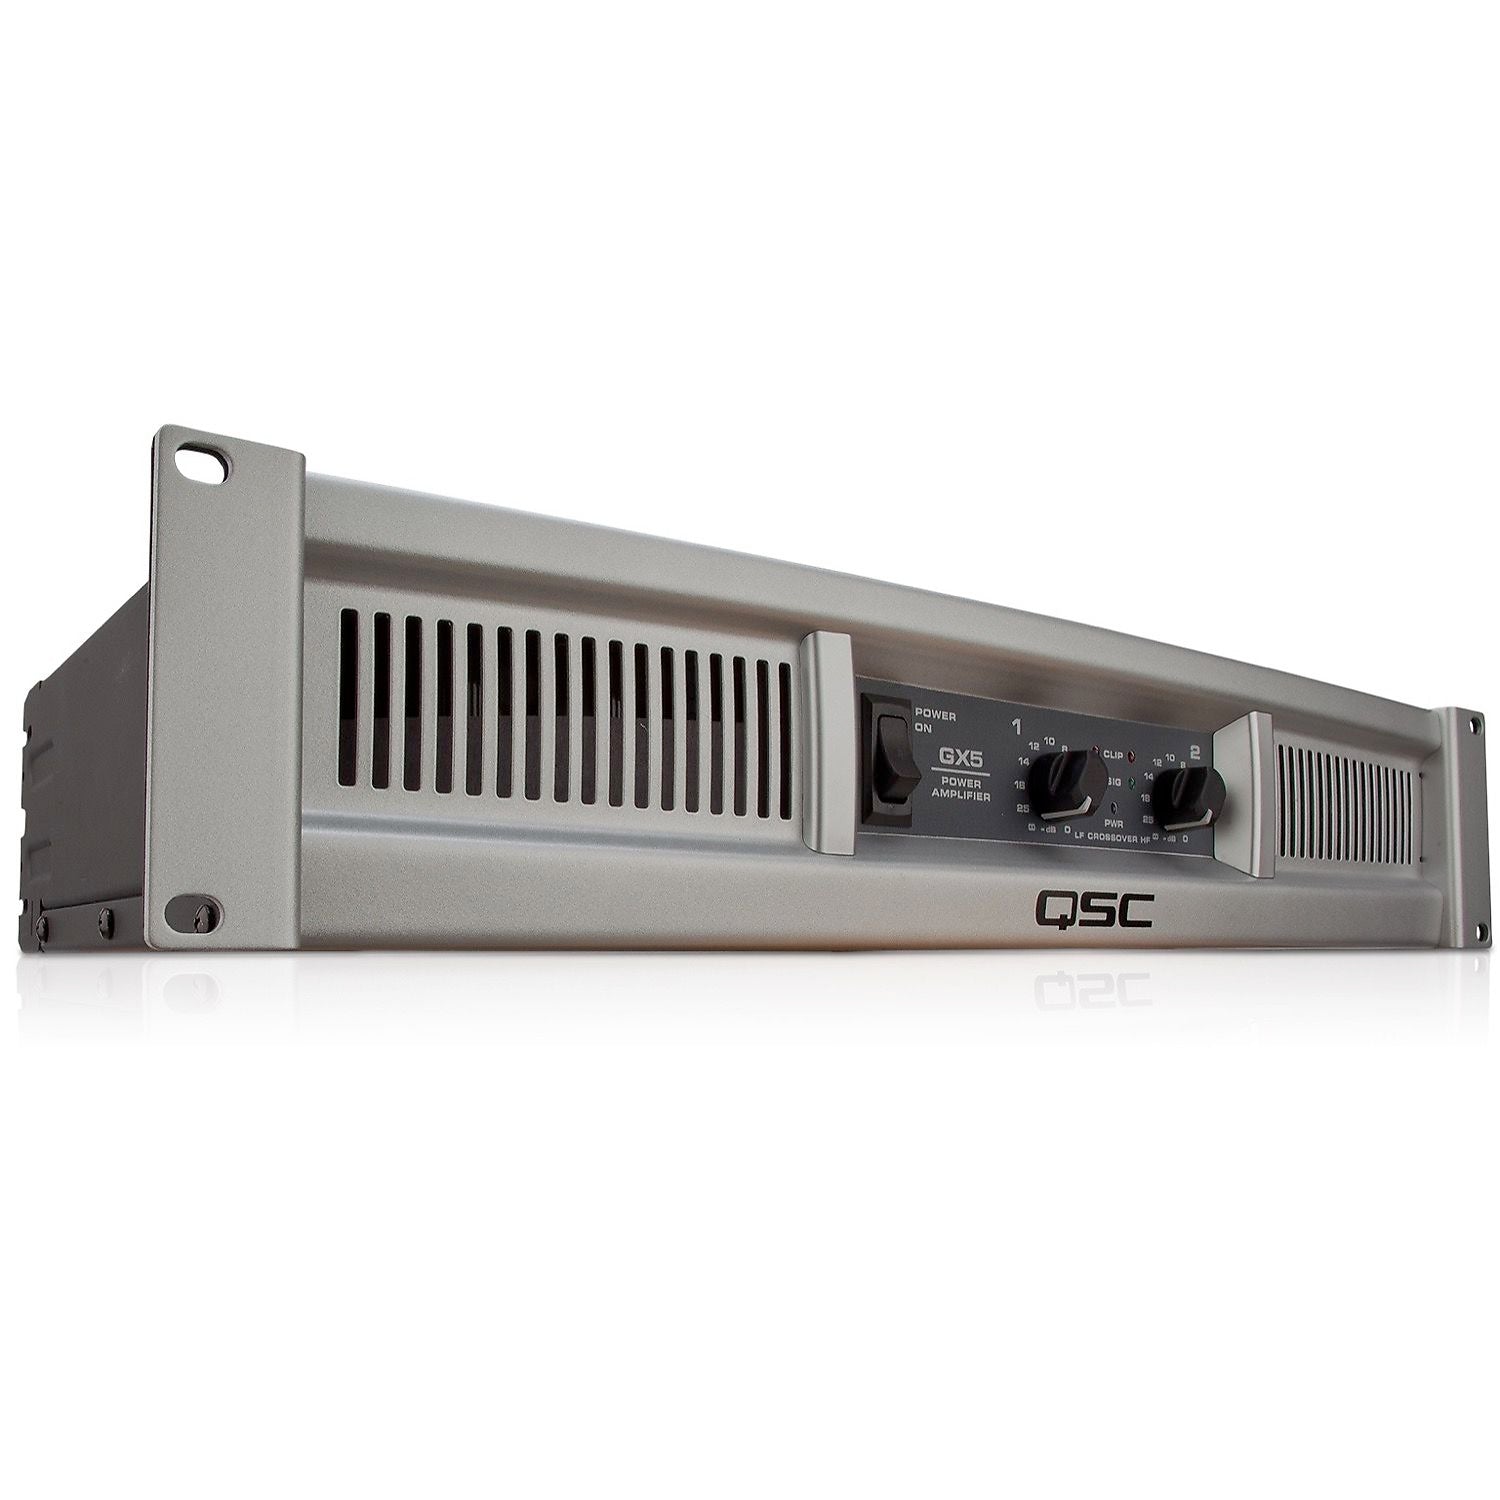 QSC GX5 Power Amplifier (500 Watts)